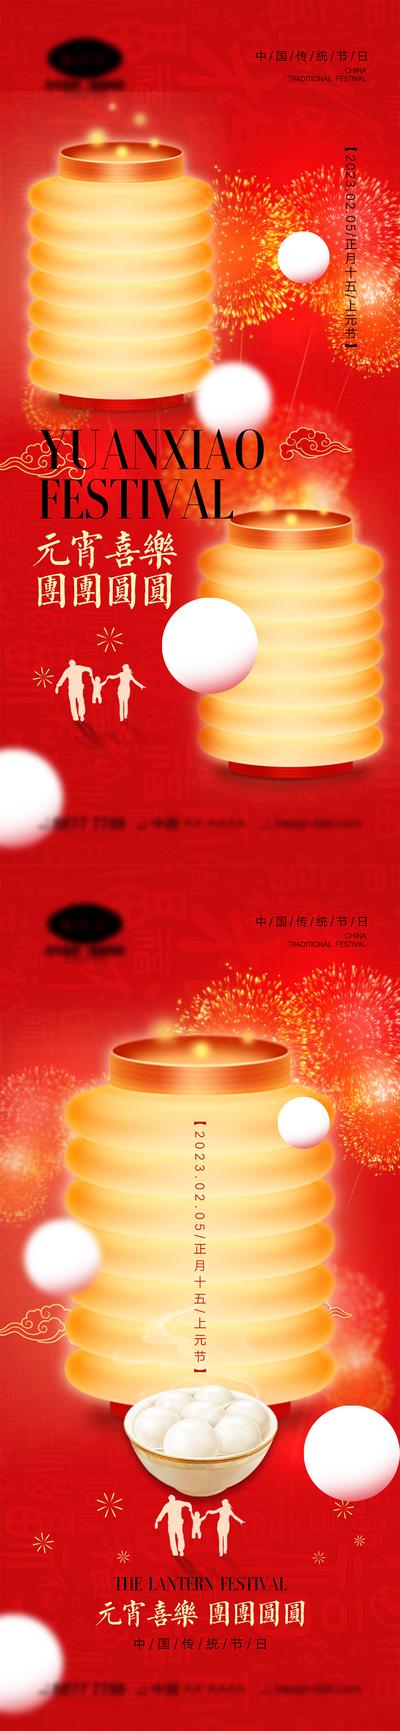 南门网 元宵节海报